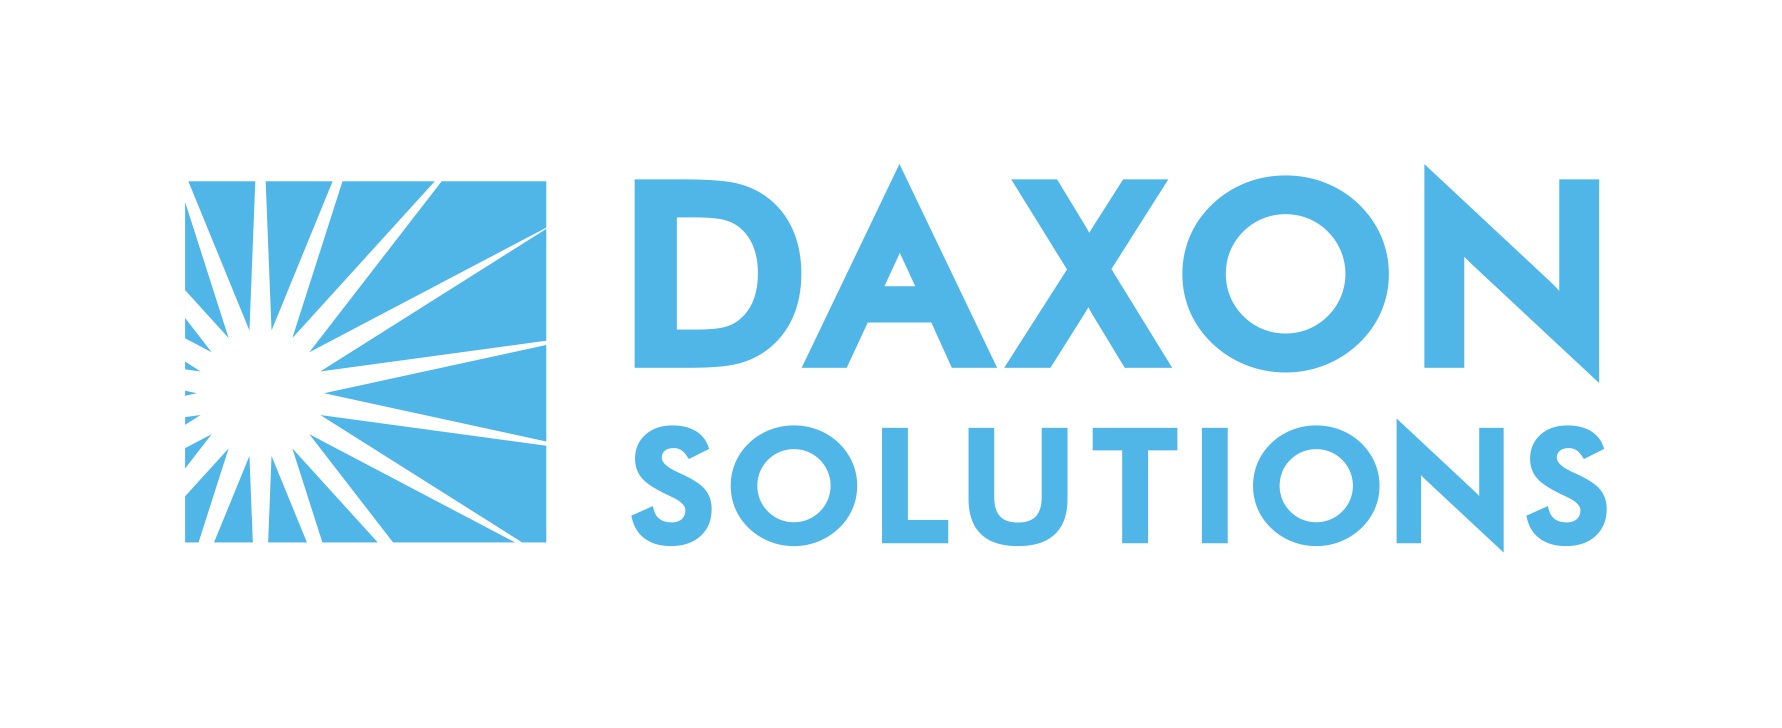 daxon solutions logo